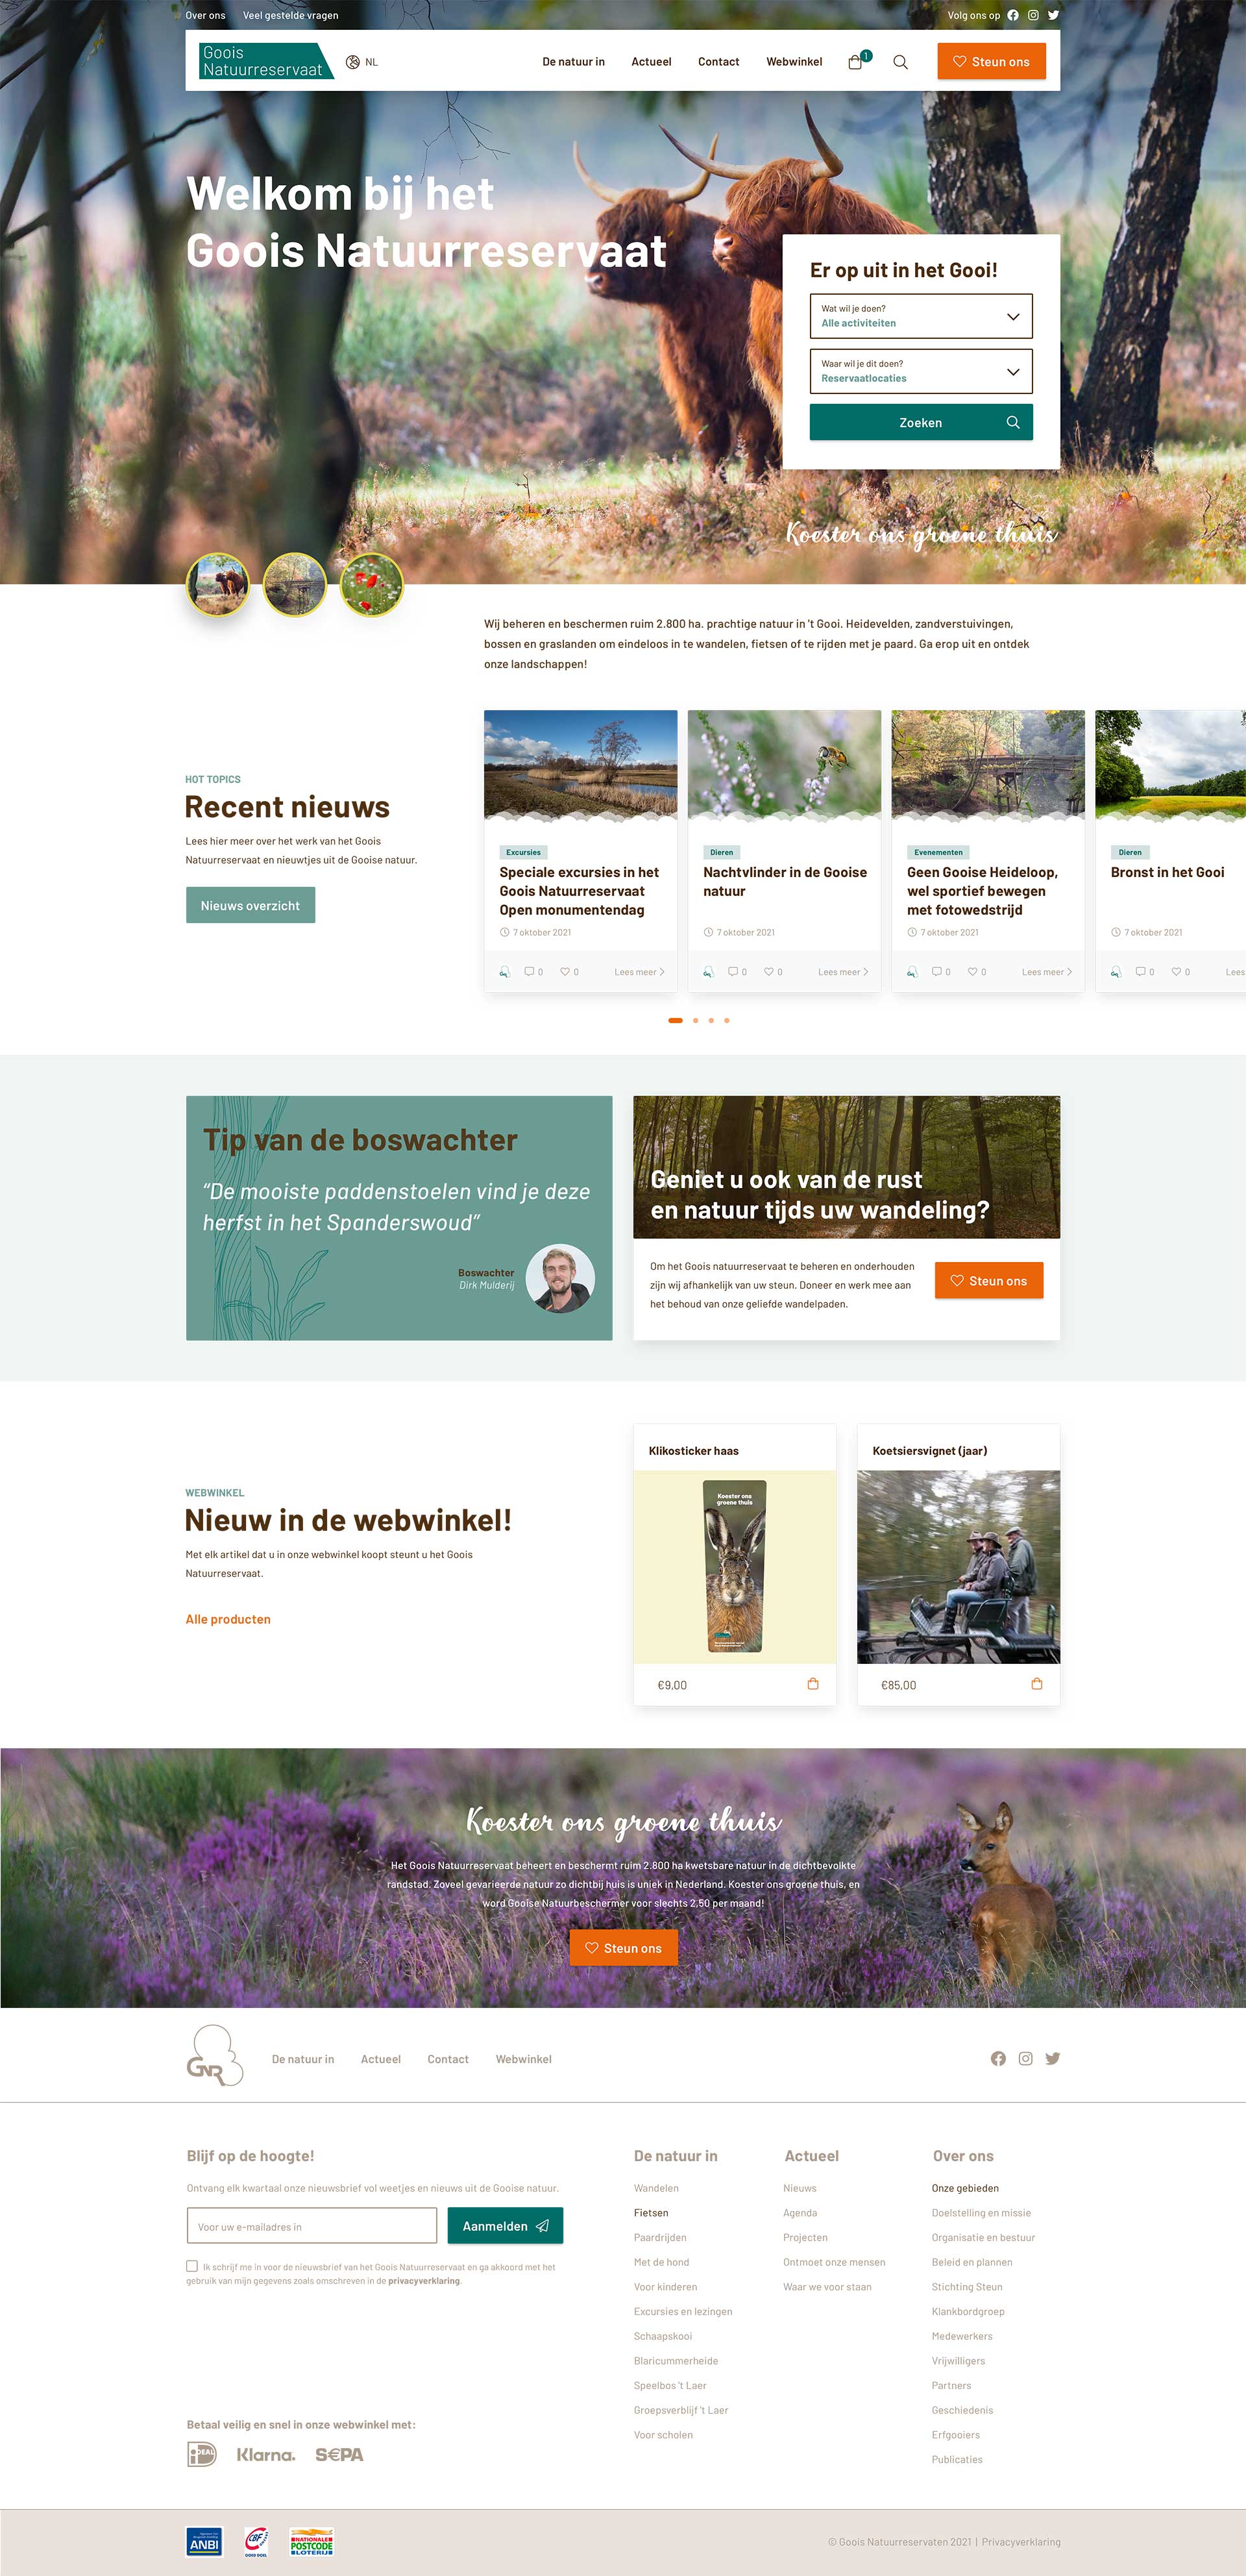 Webdesign Den Haag